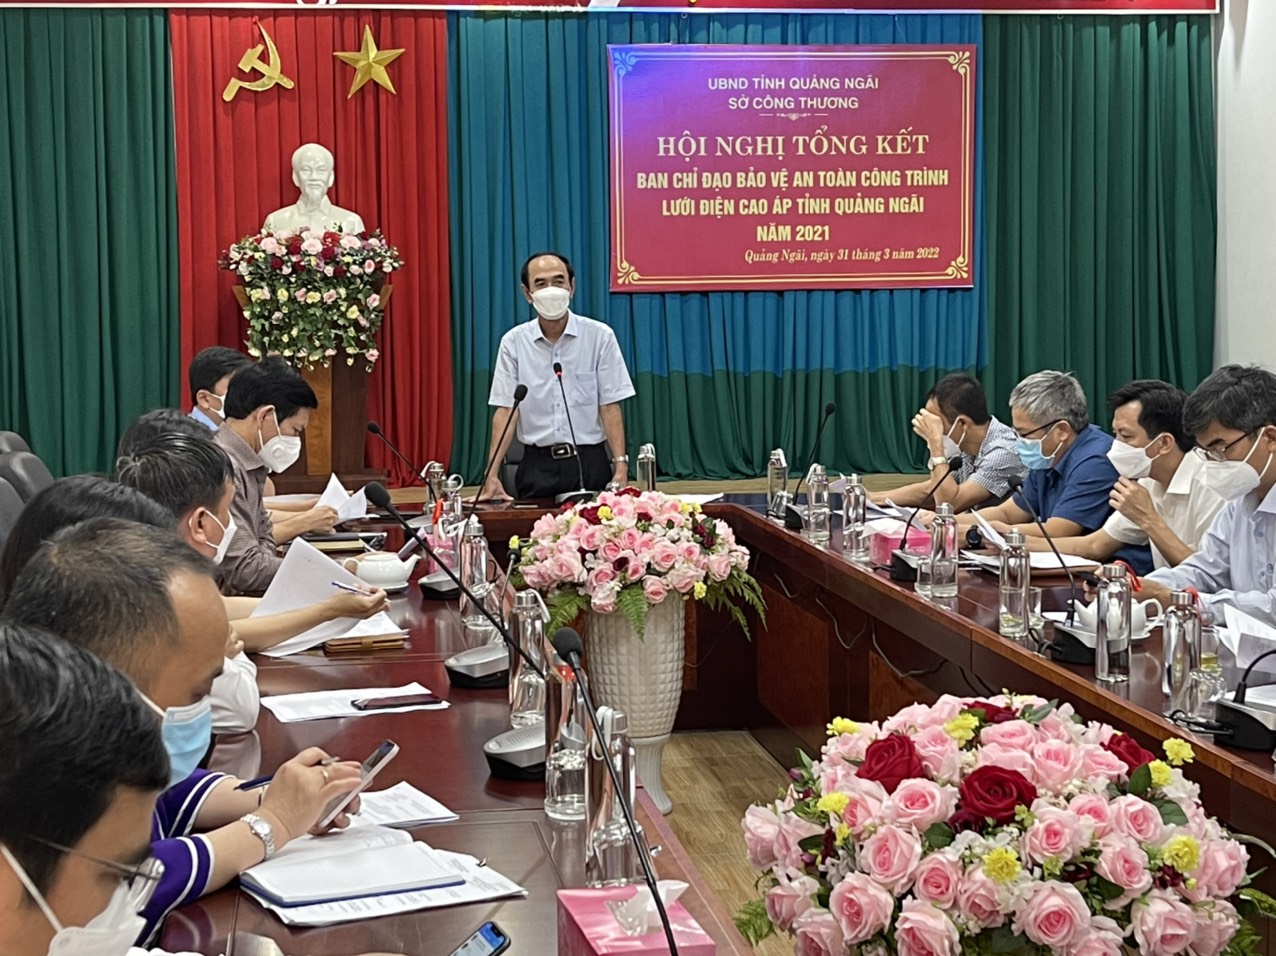 Hội nghị tổng kết hoạt động năm 2021 của Ban Chỉ đạo bảo vệ an toàn công trình lưới điện cao áp tỉnh Quảng Ngãi